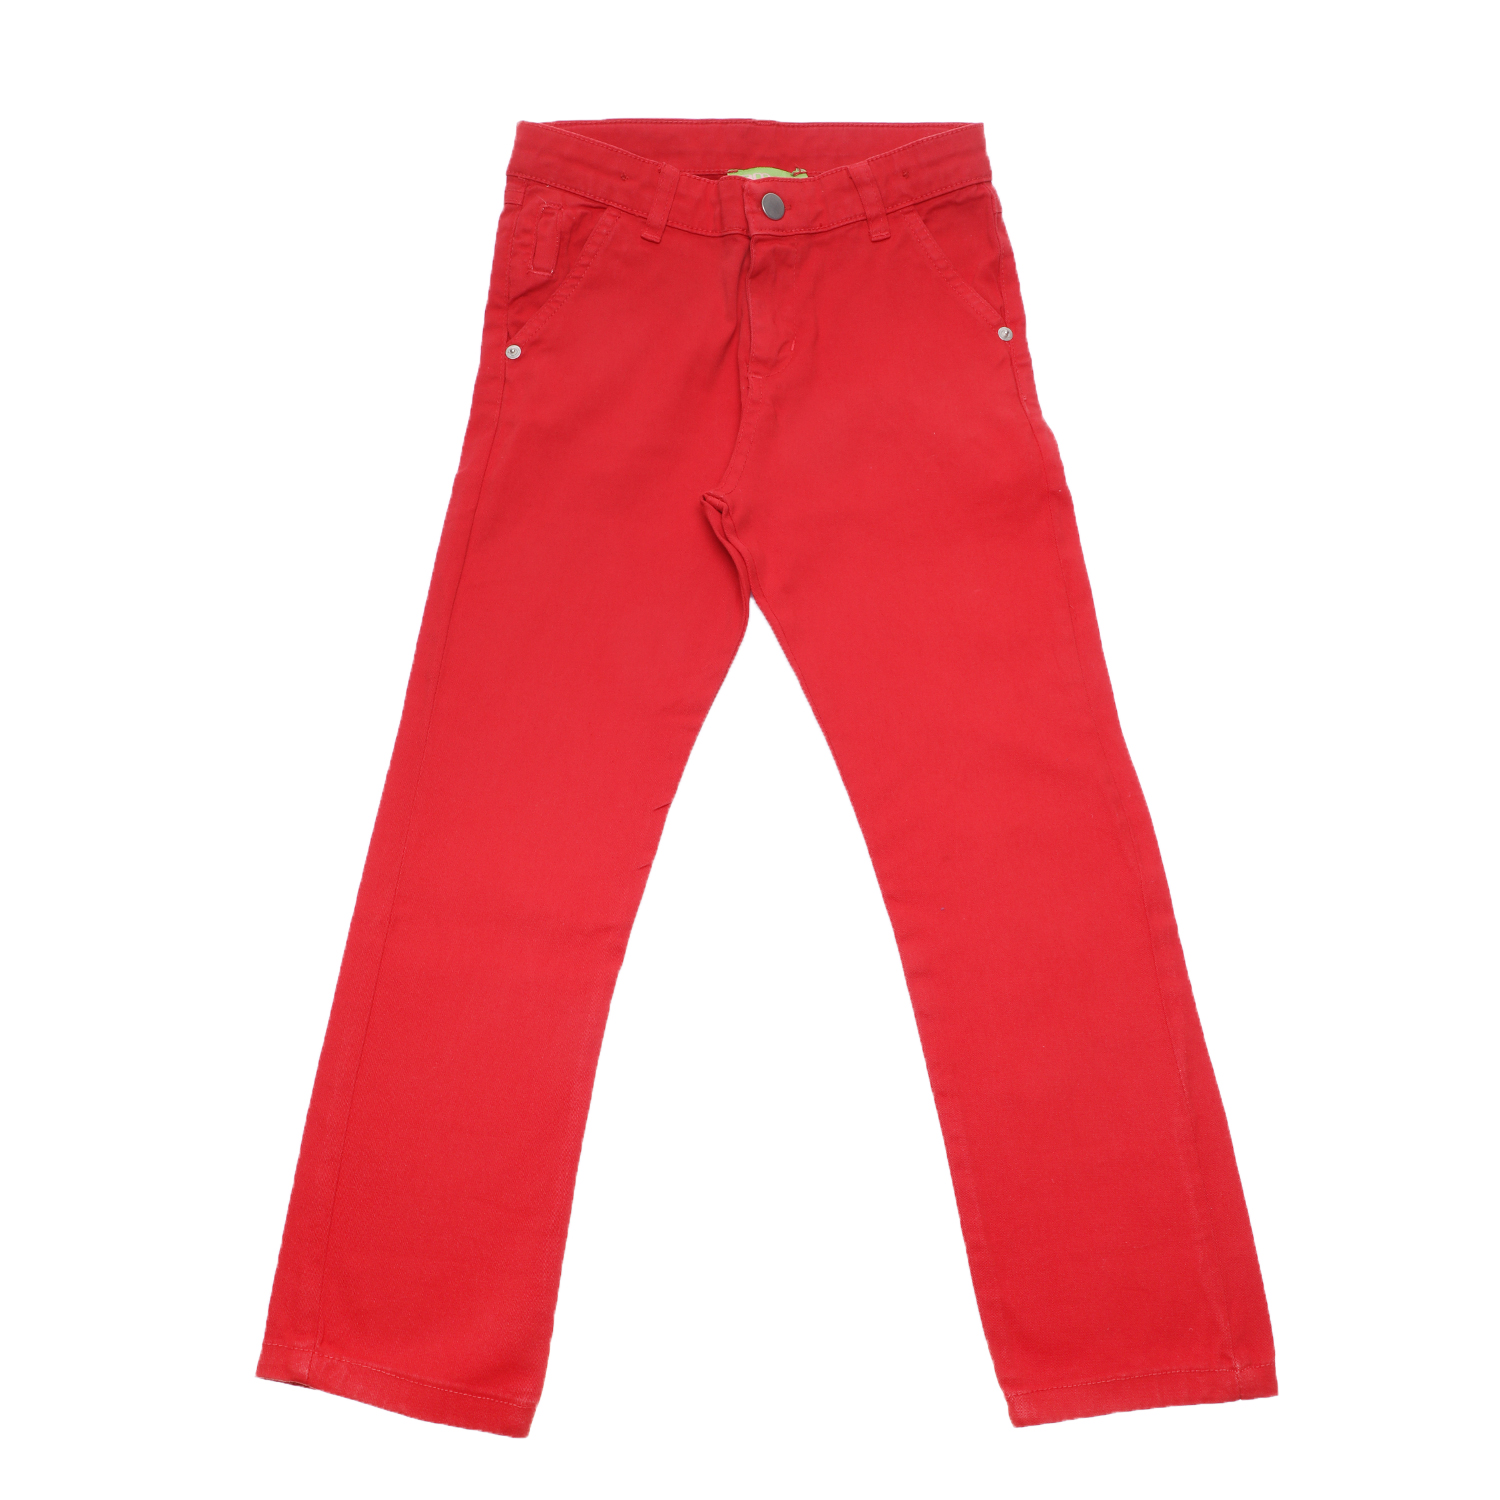 Παιδικά/Boys/Ρούχα/Παντελόνια SAM 0-13 - Παιδικό chino παντελονι SAM 0-13 κόκκινο